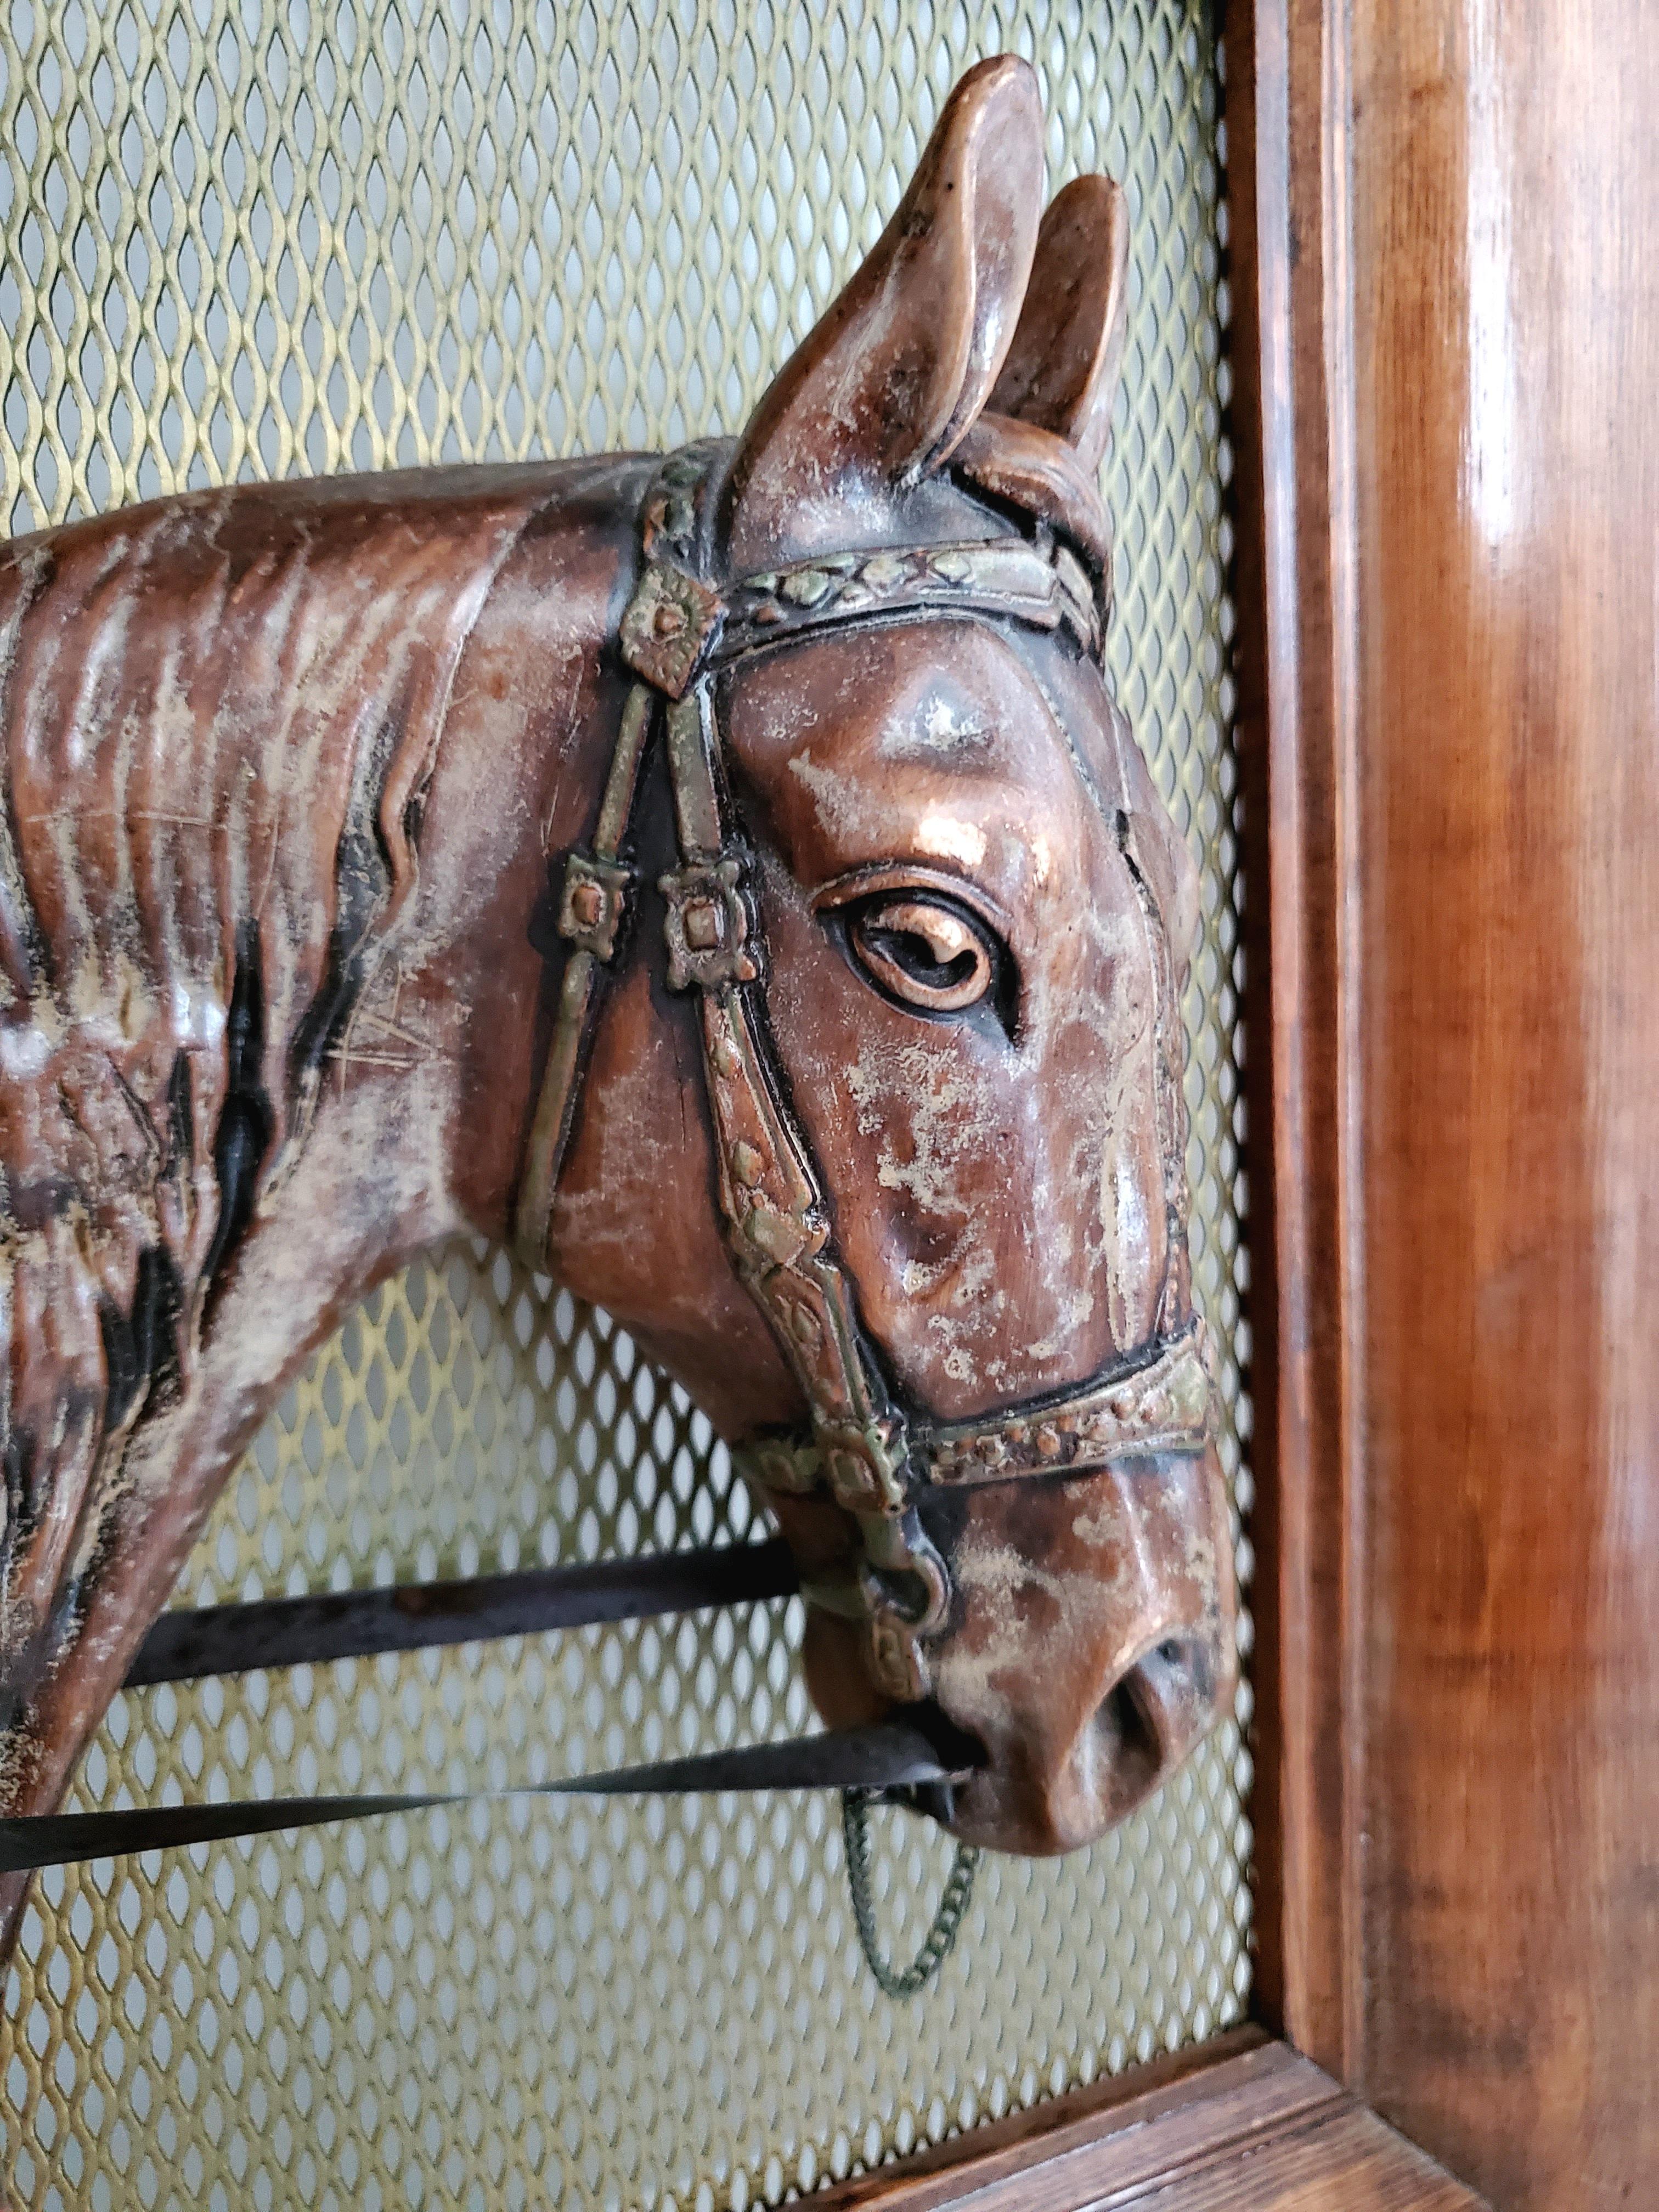 C'est le cadeau idéal pour la Saint-Valentin pour l'amateur d'équitation ou de chevaux.

Cette sculpture de cheval antique est une pièce équestre unique et spectaculaire. La sculpture du cheval est moulée en cuivre et est montée et encadrée. Cette